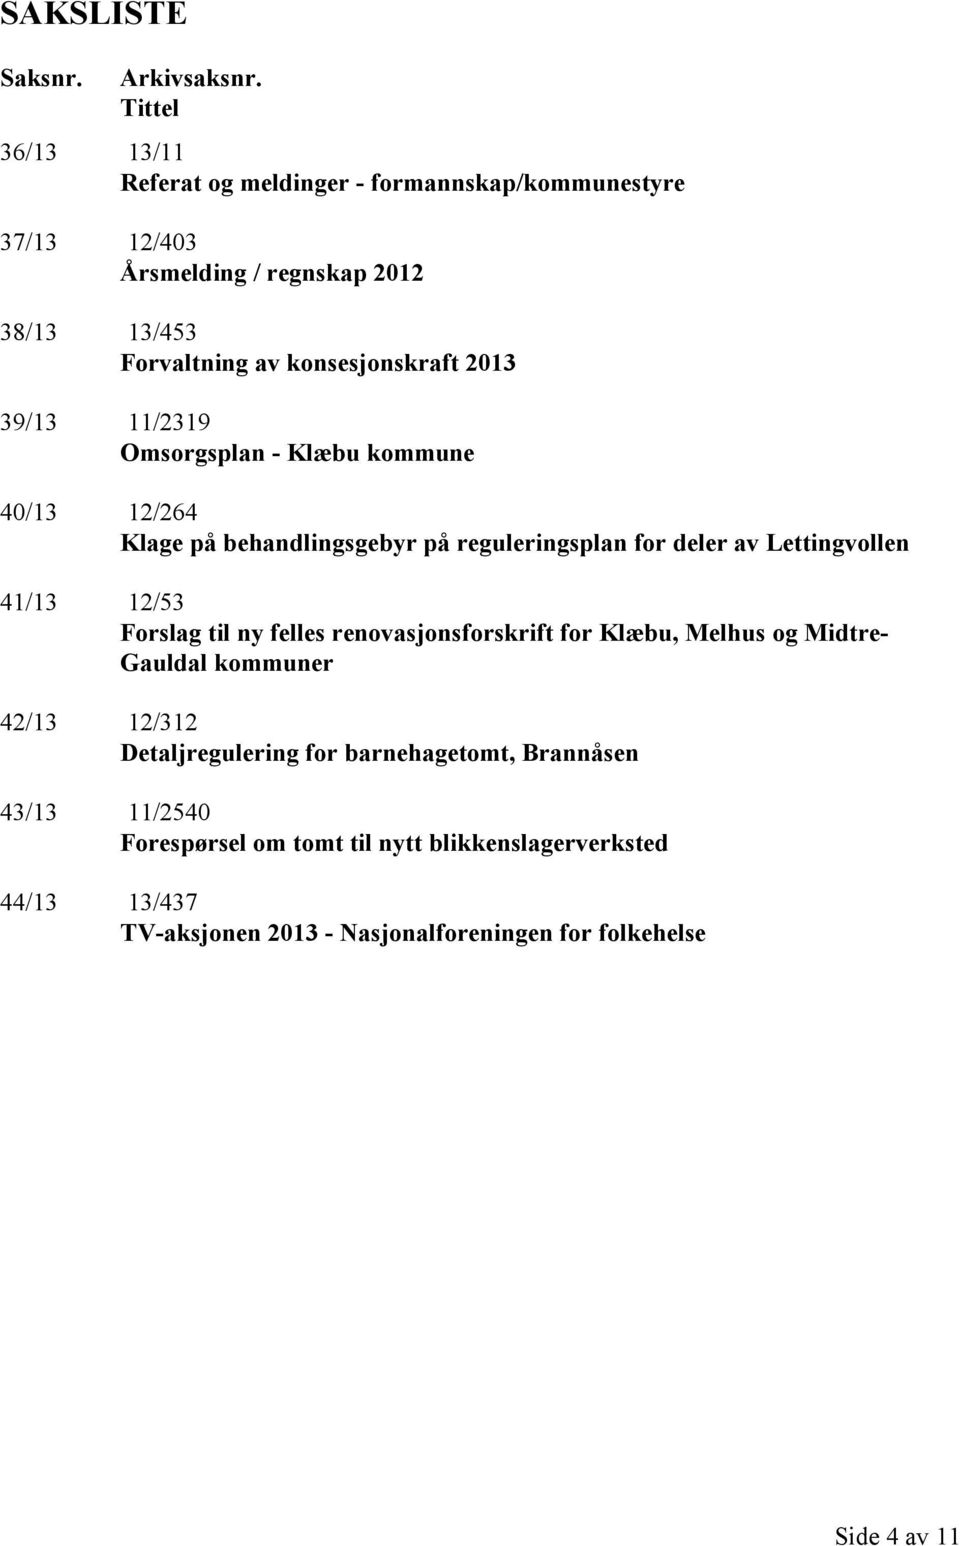 2013 39/13 11/2319 Omsorgsplan - Klæbu kommune 40/13 12/264 Klage på behandlingsgebyr på reguleringsplan for deler av Lettingvollen 41/13 12/53 Forslag